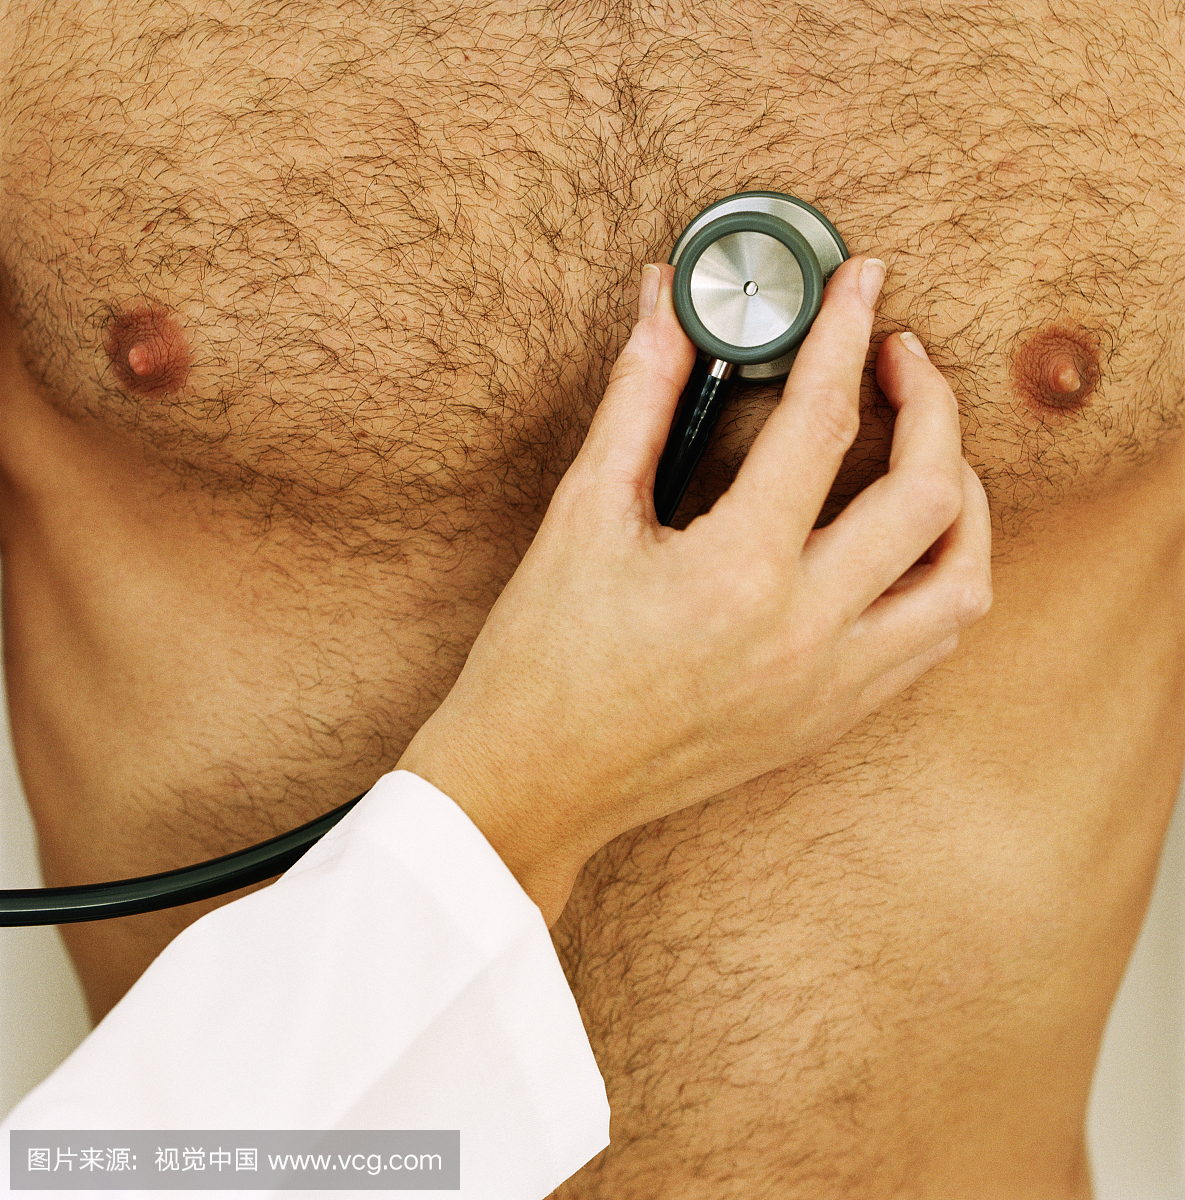 女人拿着听诊器到男人的裸露的胸部,中间部分